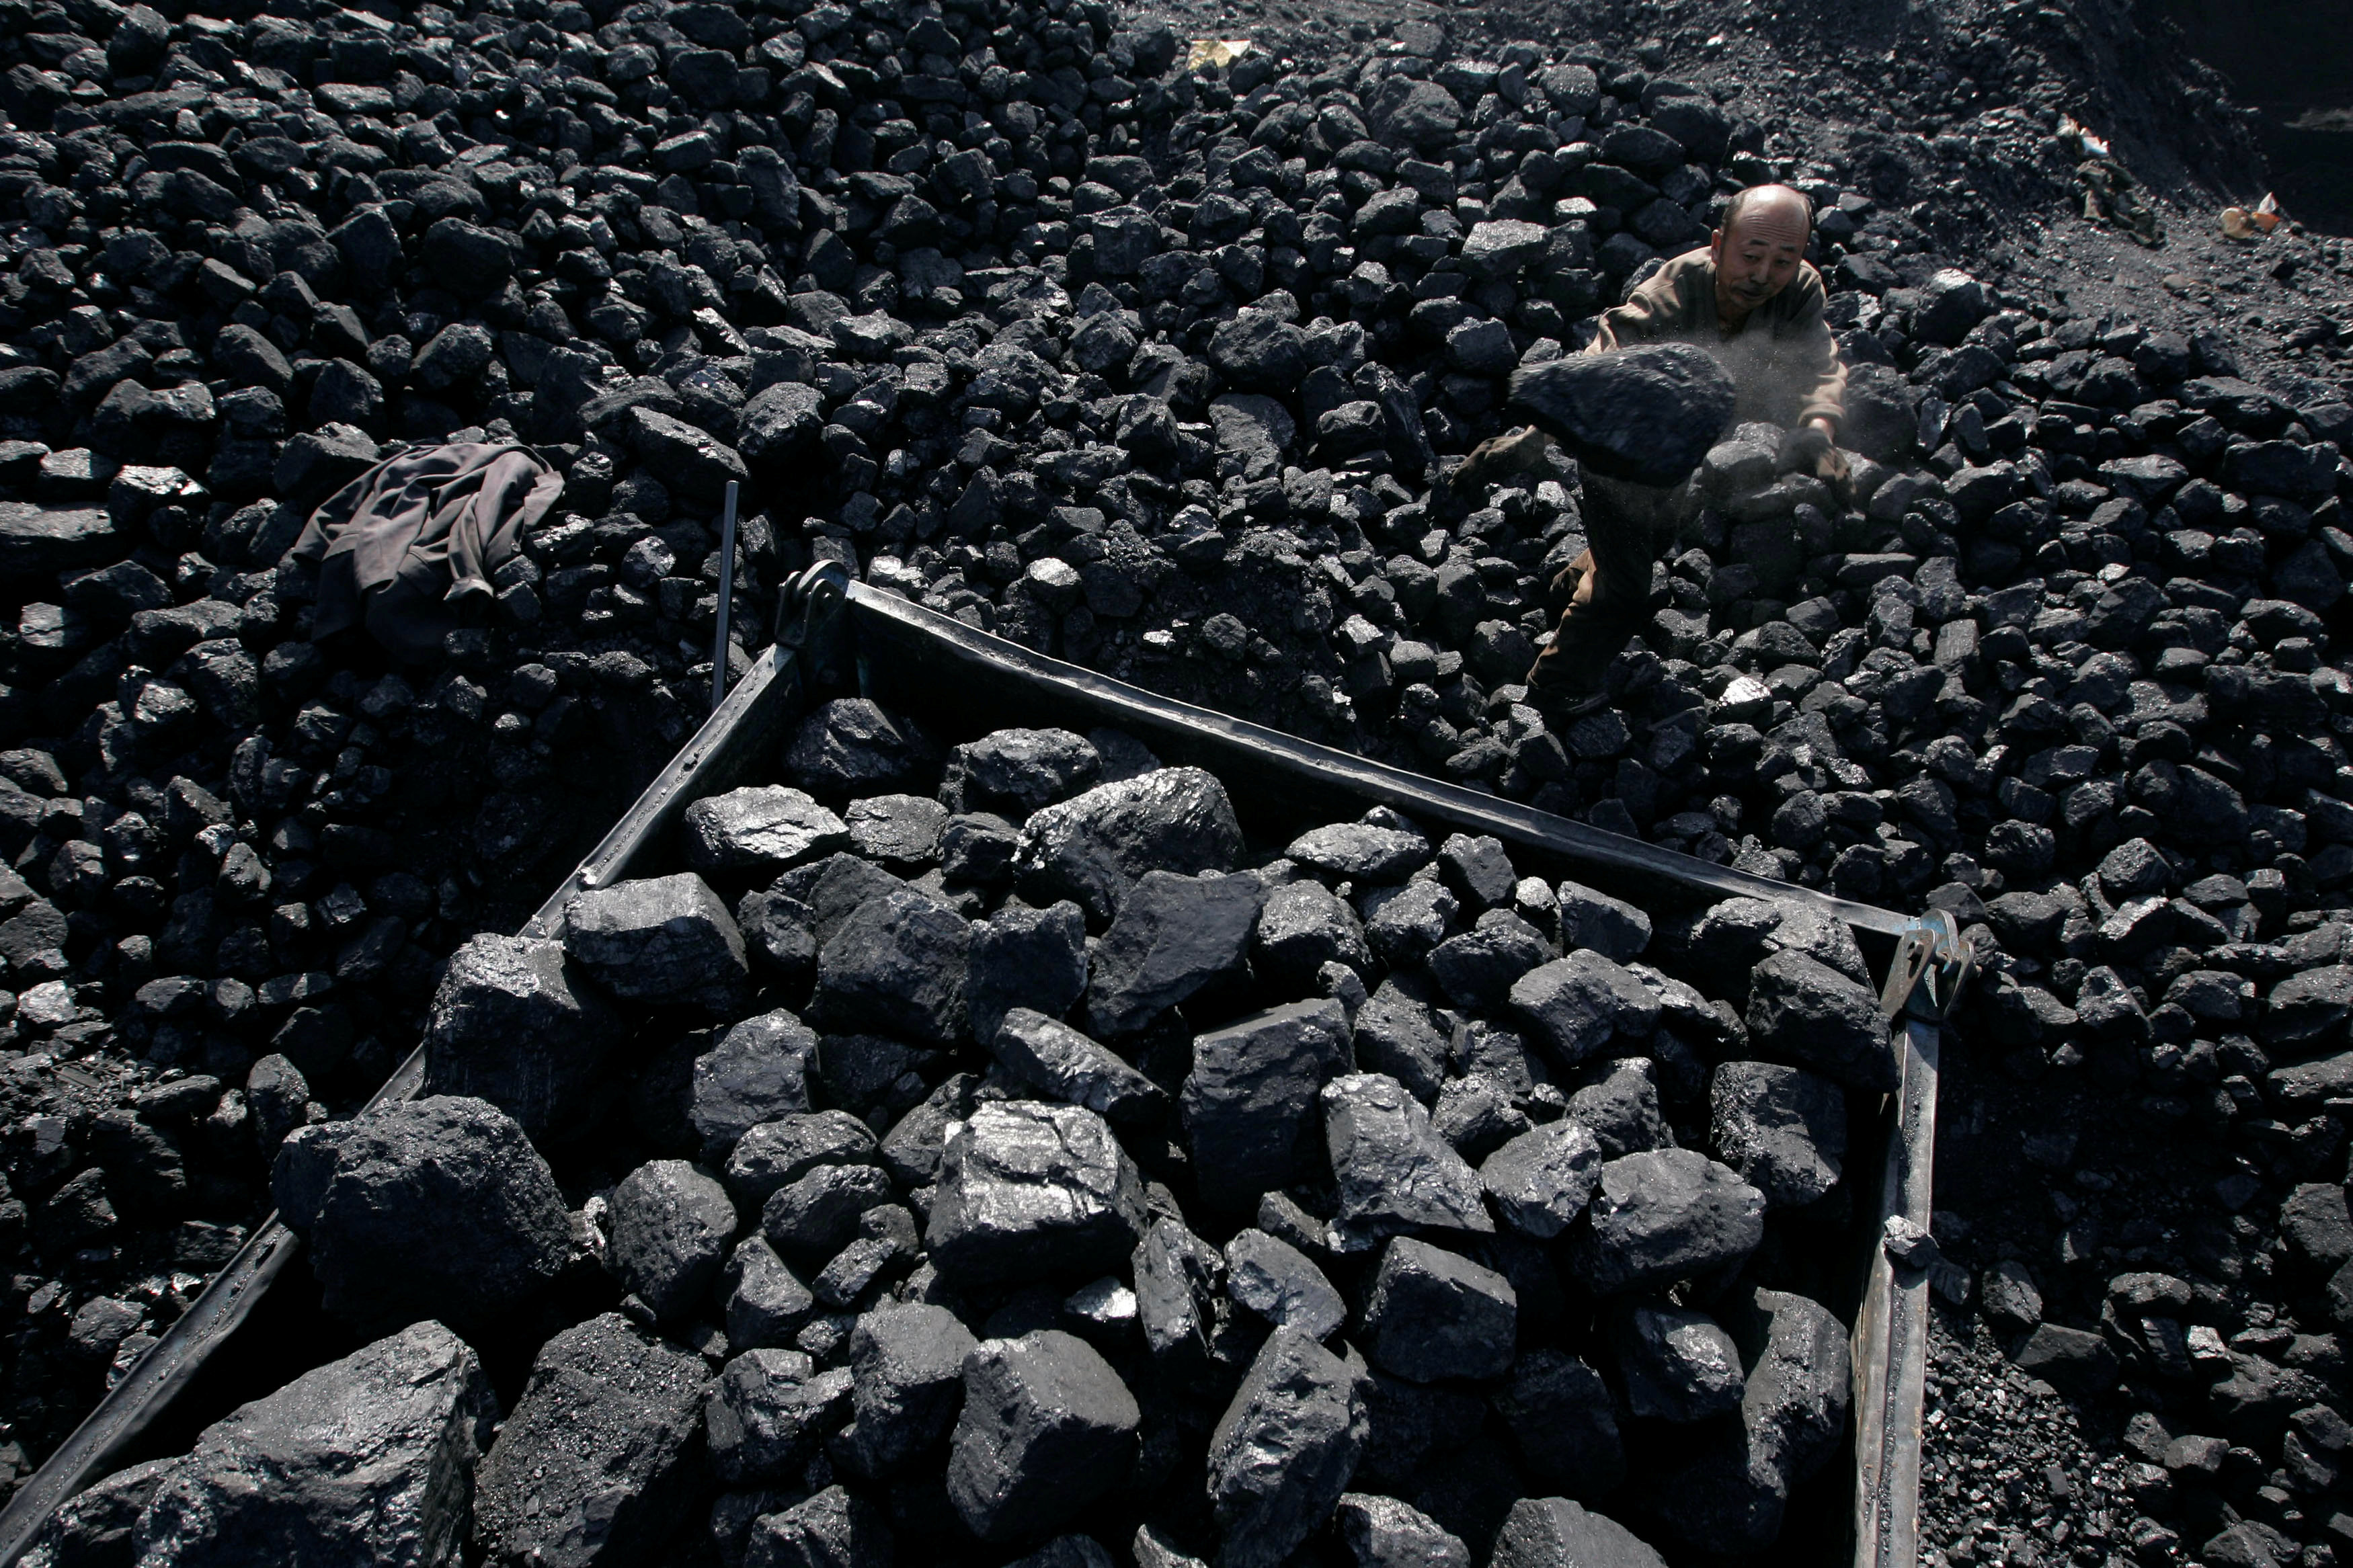 Угольная промышленность главное